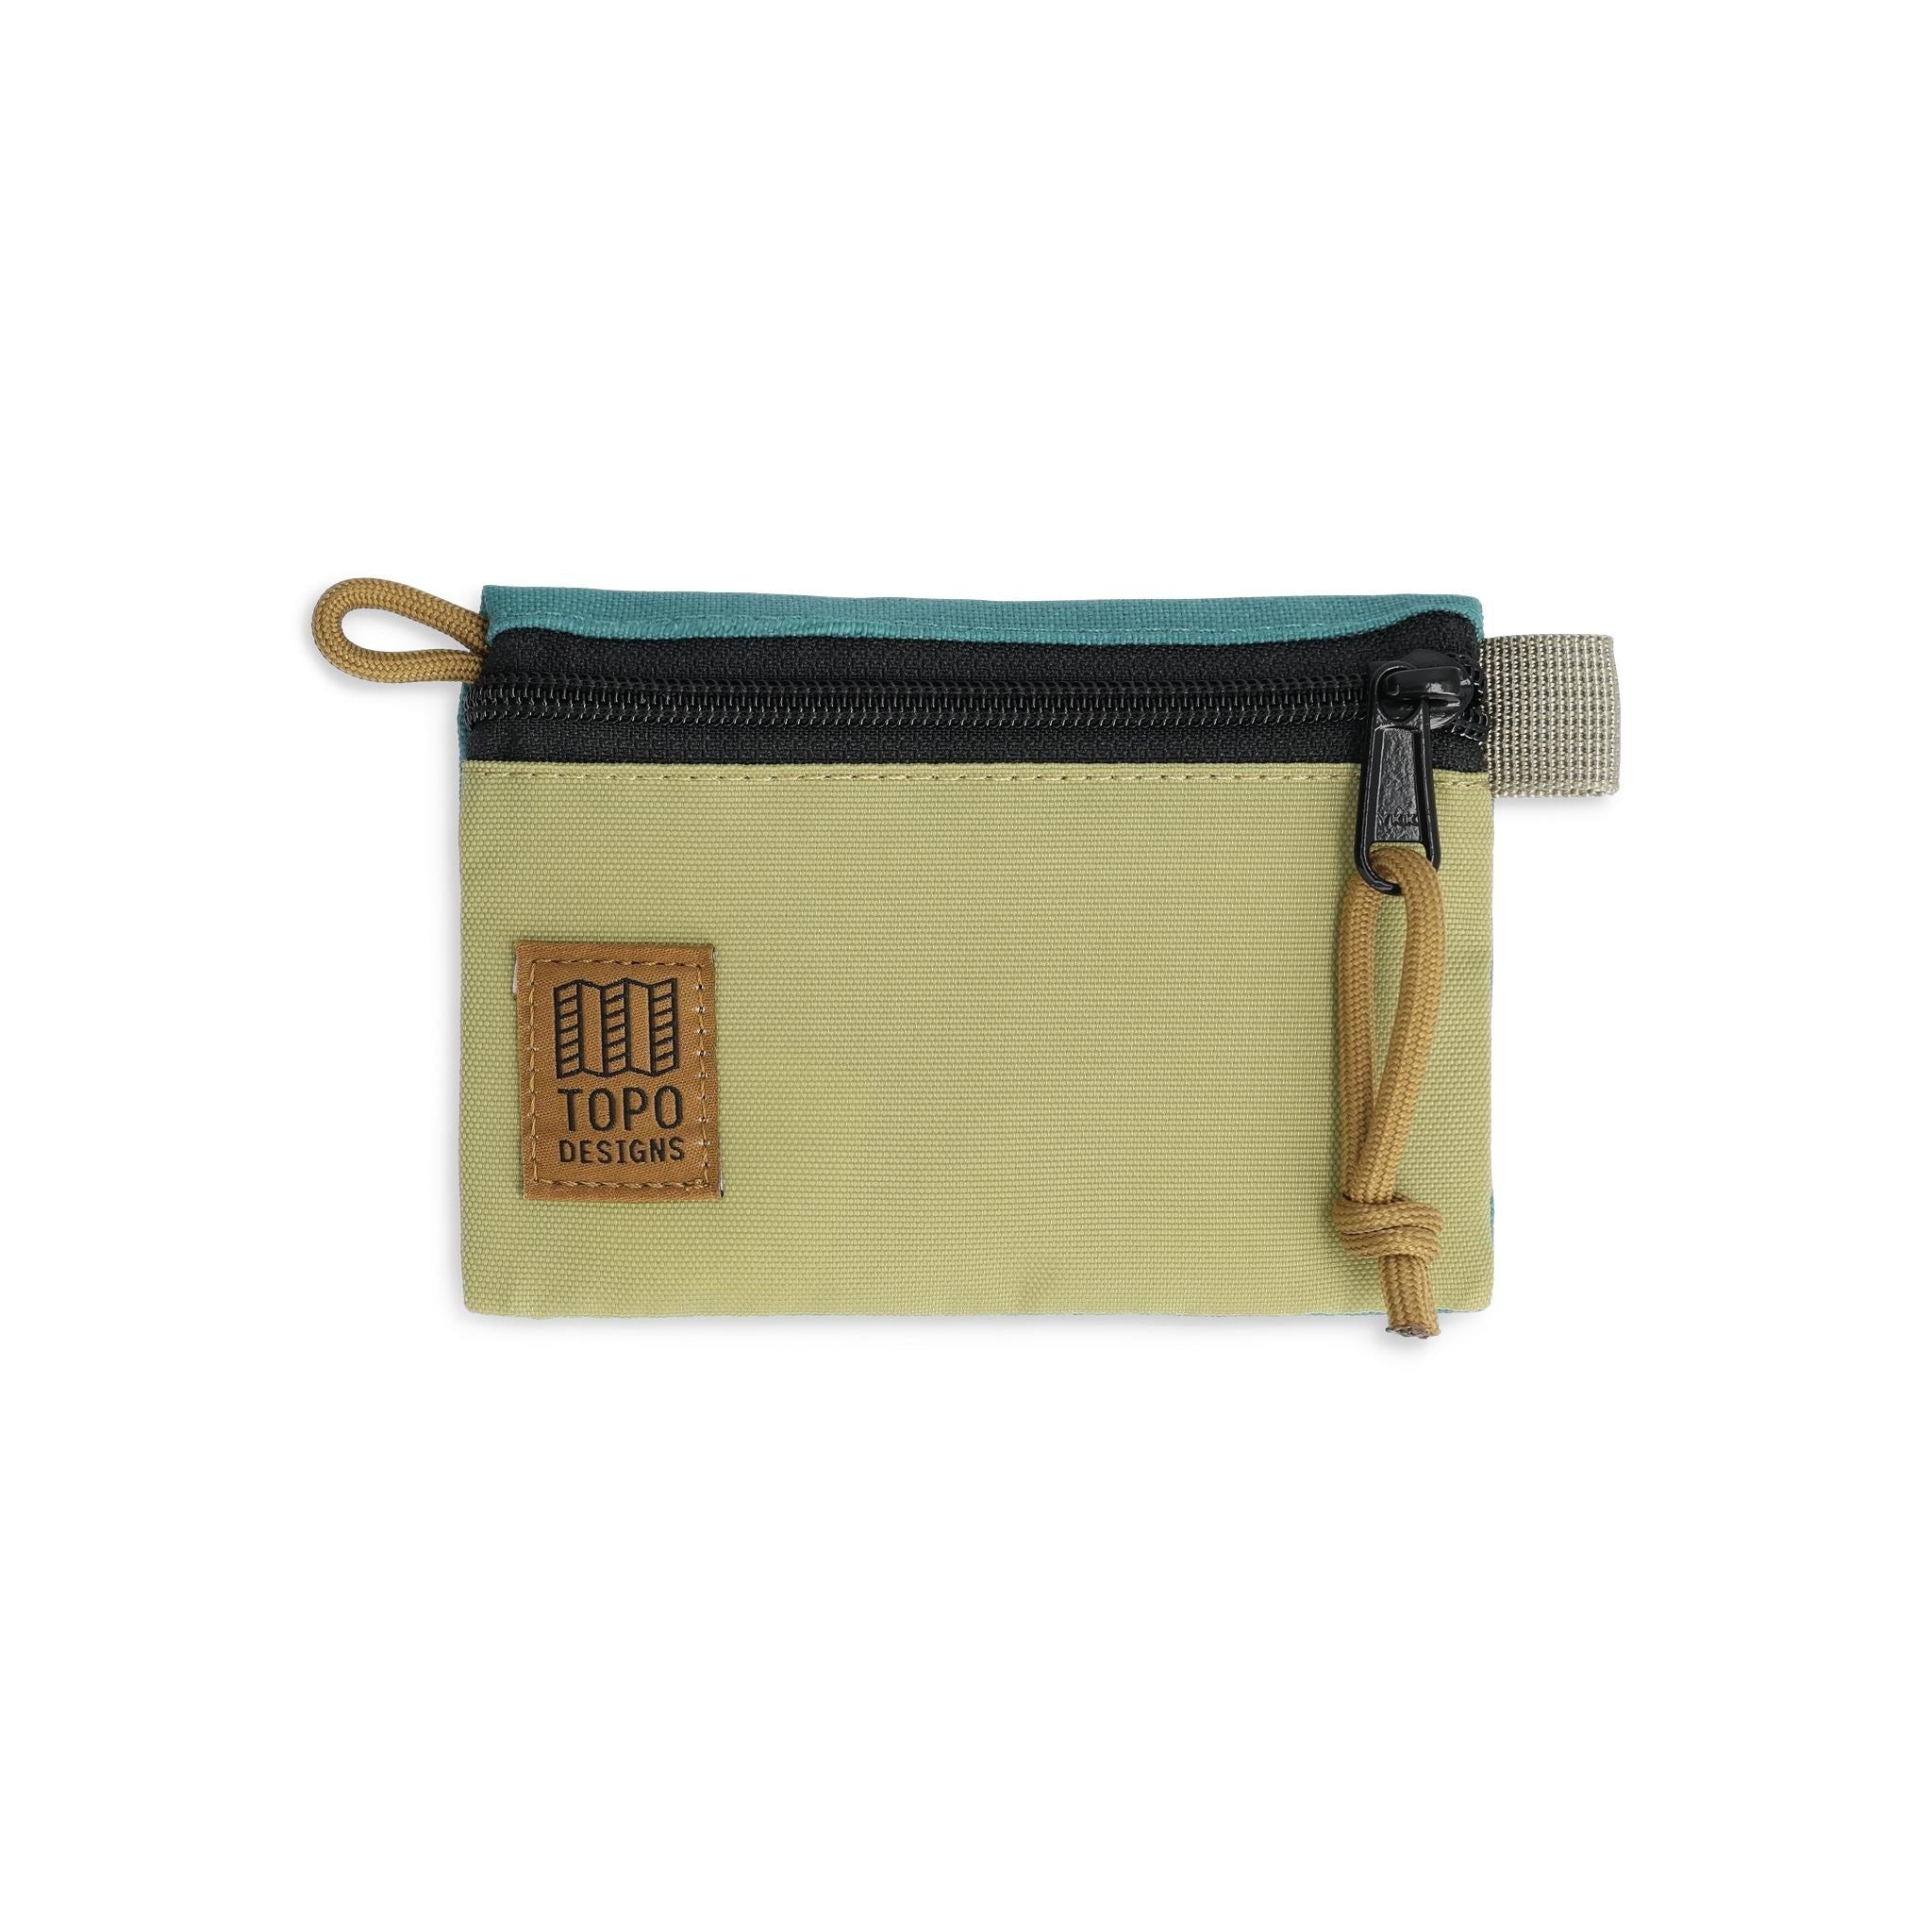 Topo Designs Accessory Bag "Micro" in "Caribbean / Moss""